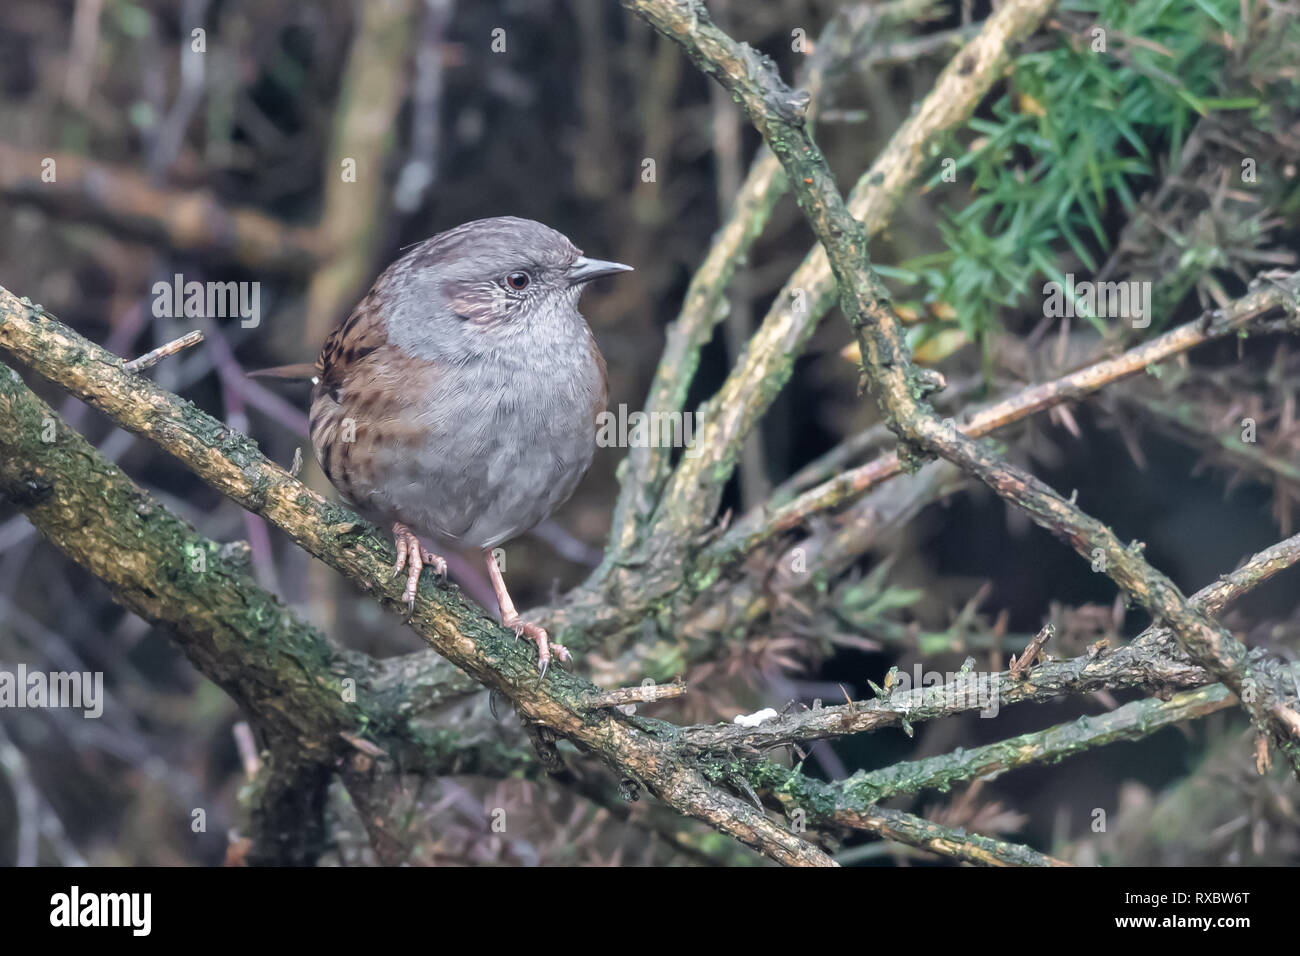 A chiudere il ritratto di dunnock hedge sparrow appollaiato su un ramo in una bussola cercando di destra Foto Stock